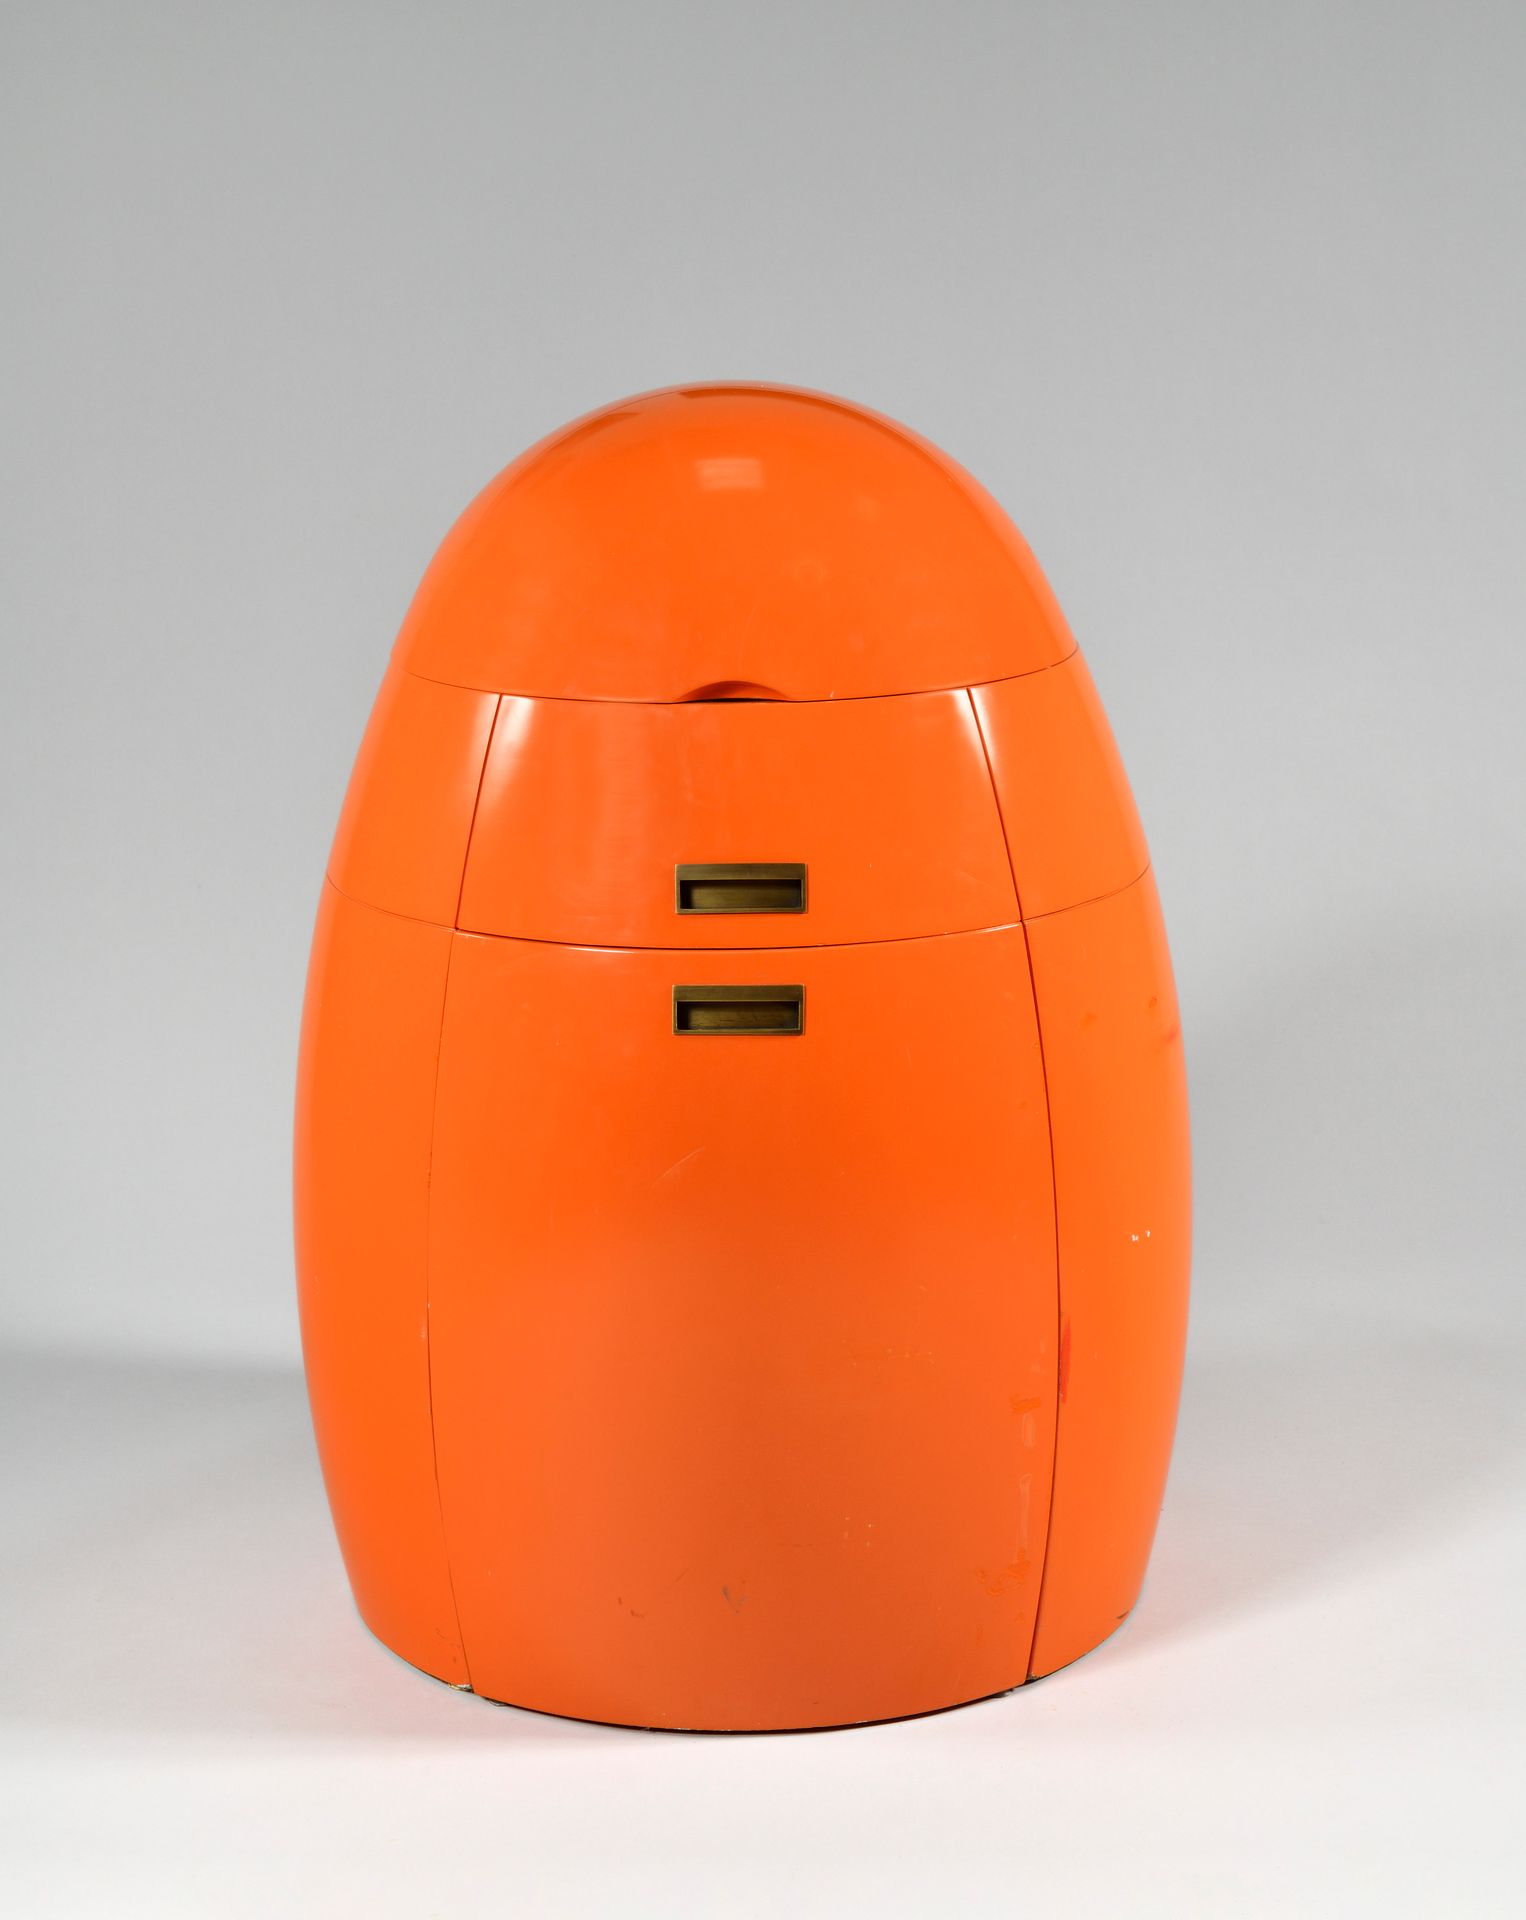 Null 
巴黎Decca家具公司

原型

橙色漆木的卵形梳妆台，有一面镜子和一个内衬棕色皮革的盒子，座椅从里面出来。

1980年代的工作

(有些例子是用&hellip;